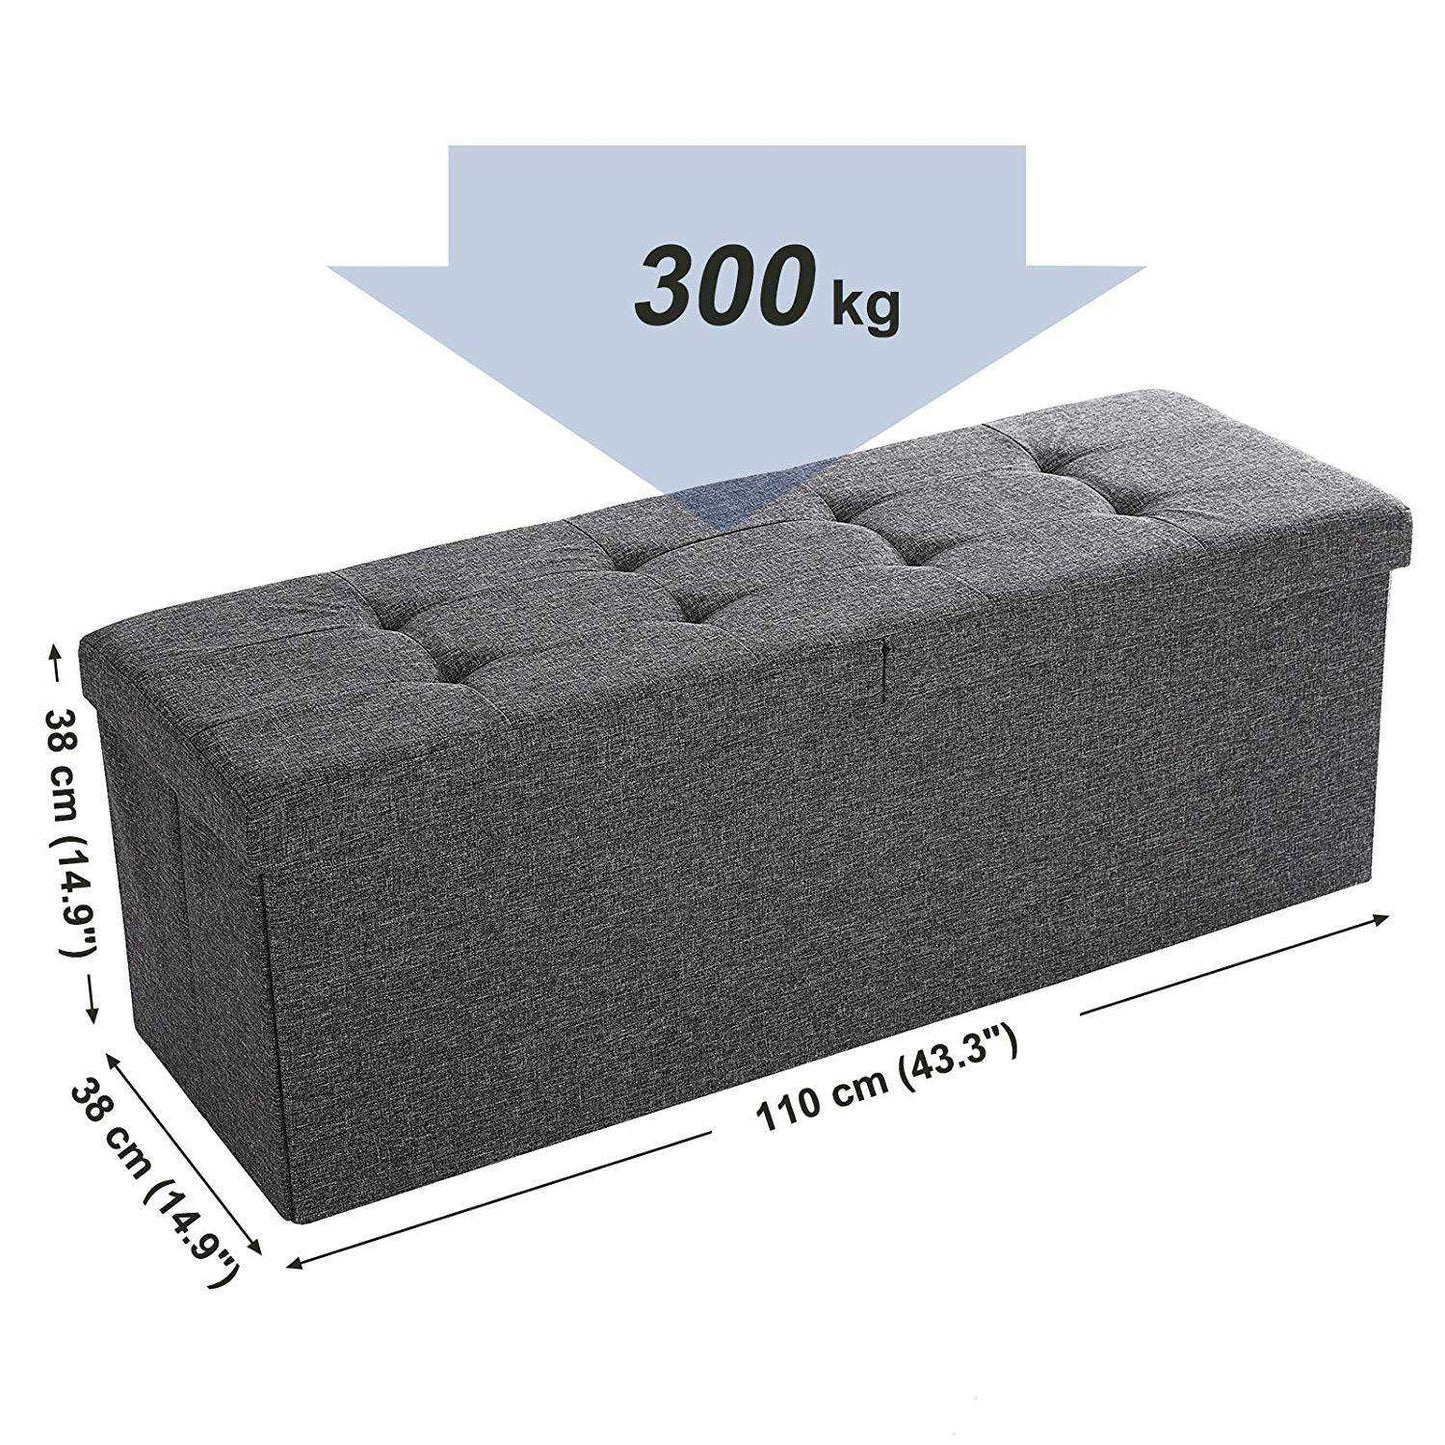 Nancy's Hocker Linen - Storage Bench - Footstools With Storage Space - Bench With Storage - Gray - 110 x 38 x 38 cm